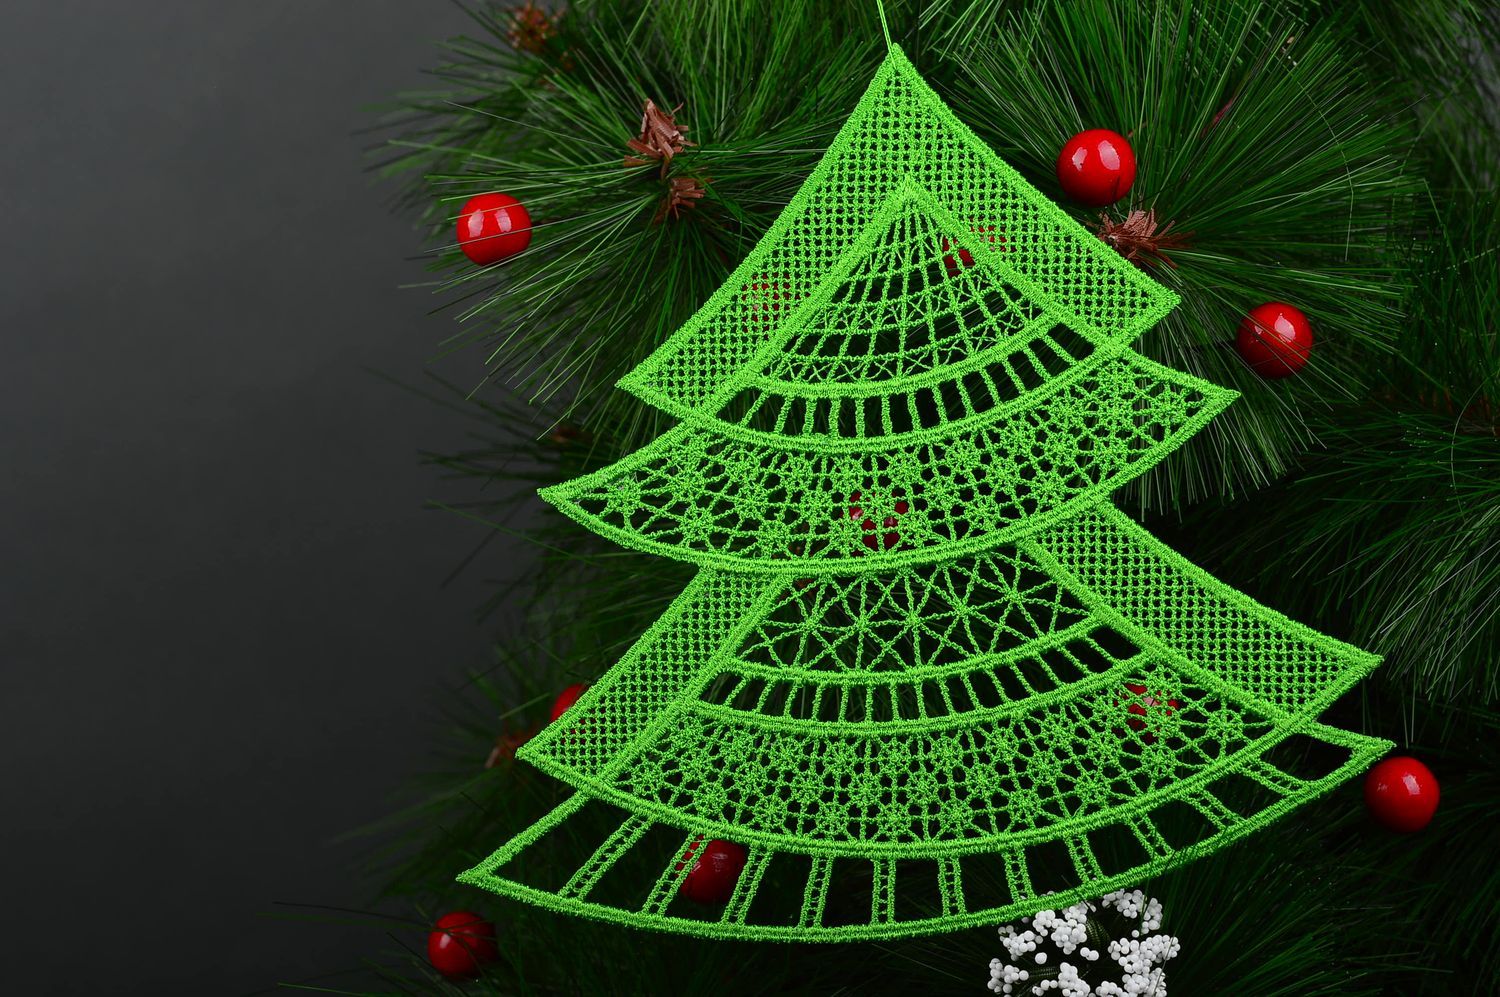 Árbol de Navidad hecho a mano de hilos elemento decorativo adorno navideño foto 1